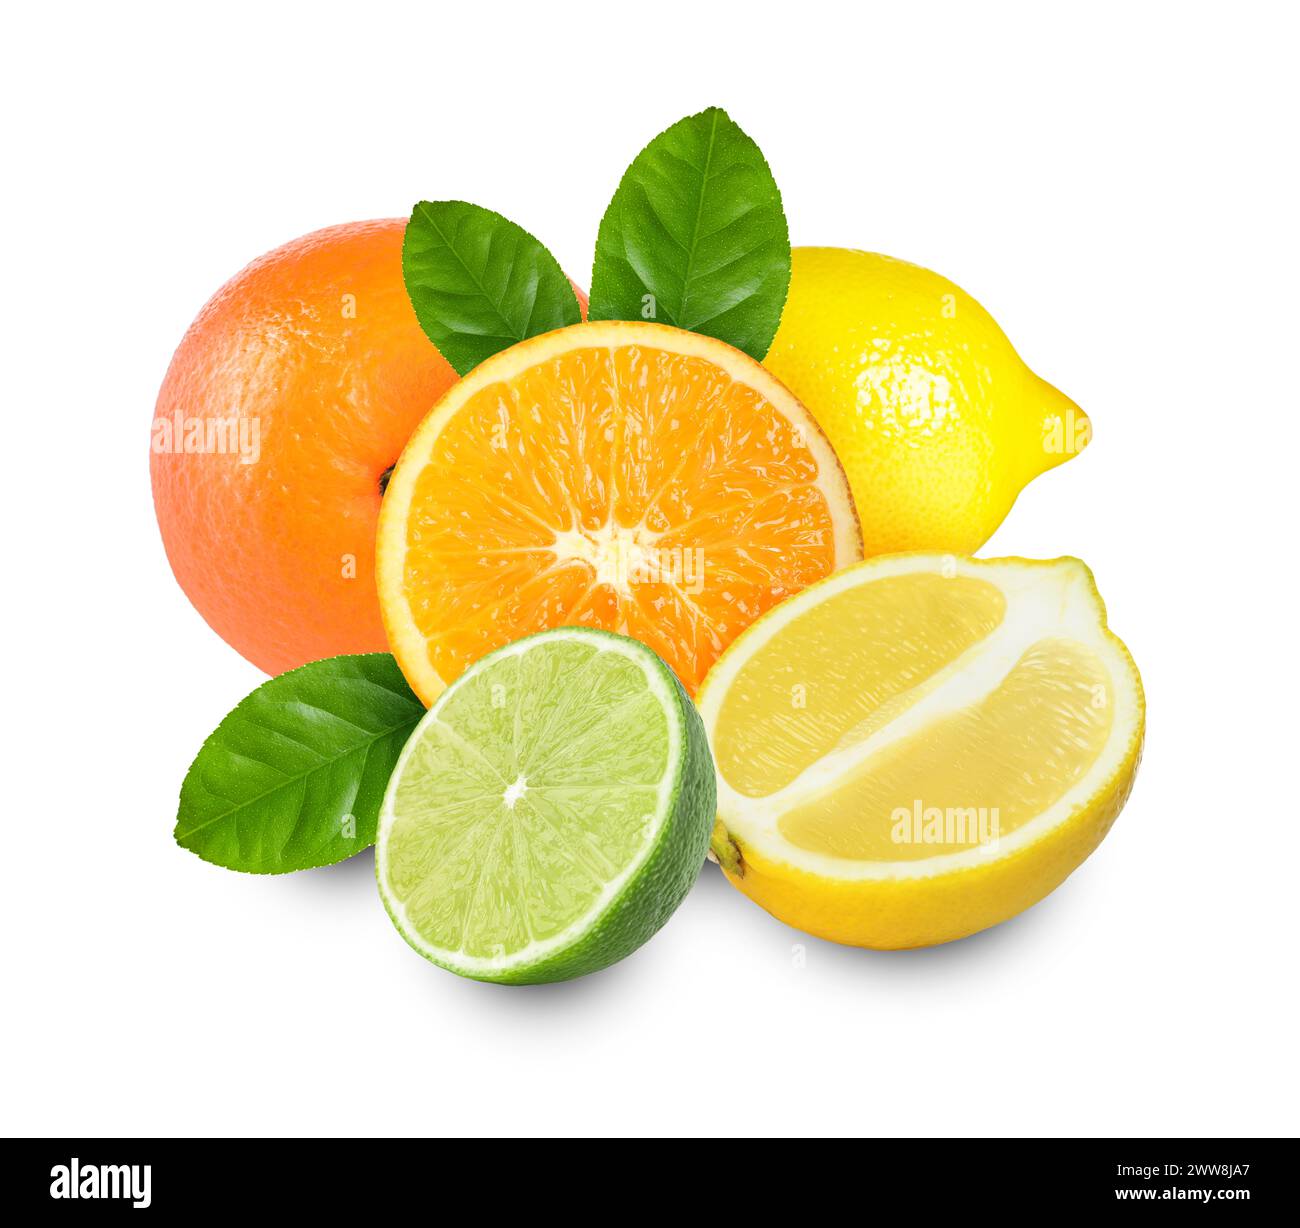 Citrus fruits. Fresh oranges, lemons and lime on white background Stock Photo